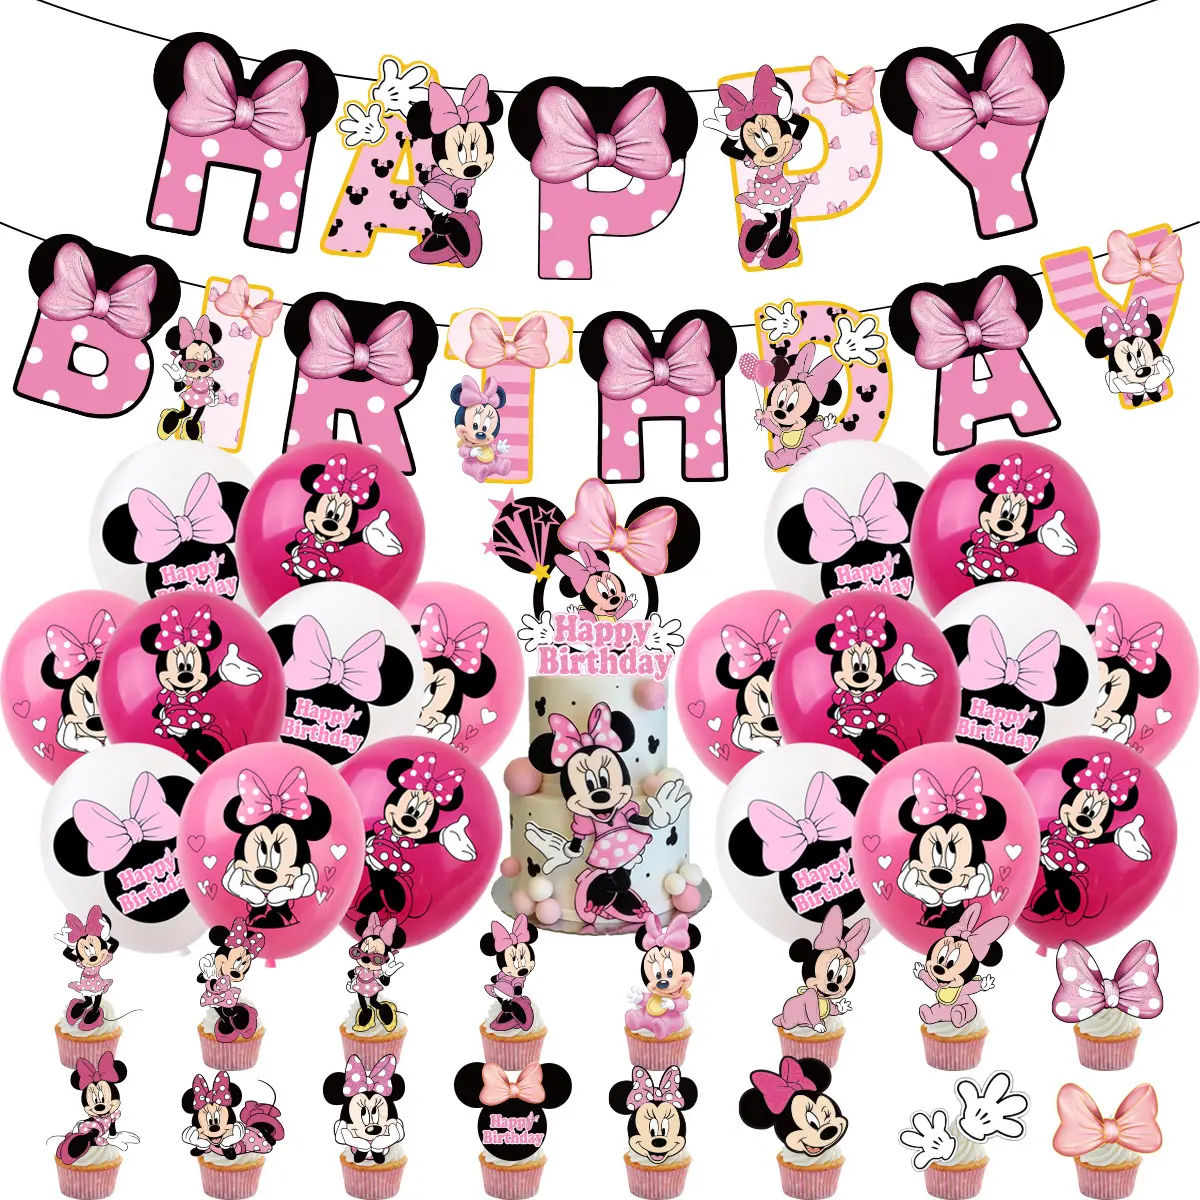 Rosa Minnie Feliz cumpleaños Decoraciones Globos Banner Cupcake Topper Niños Fiesta de cumpleaños Suministros Baby Shower Air Globos X0409